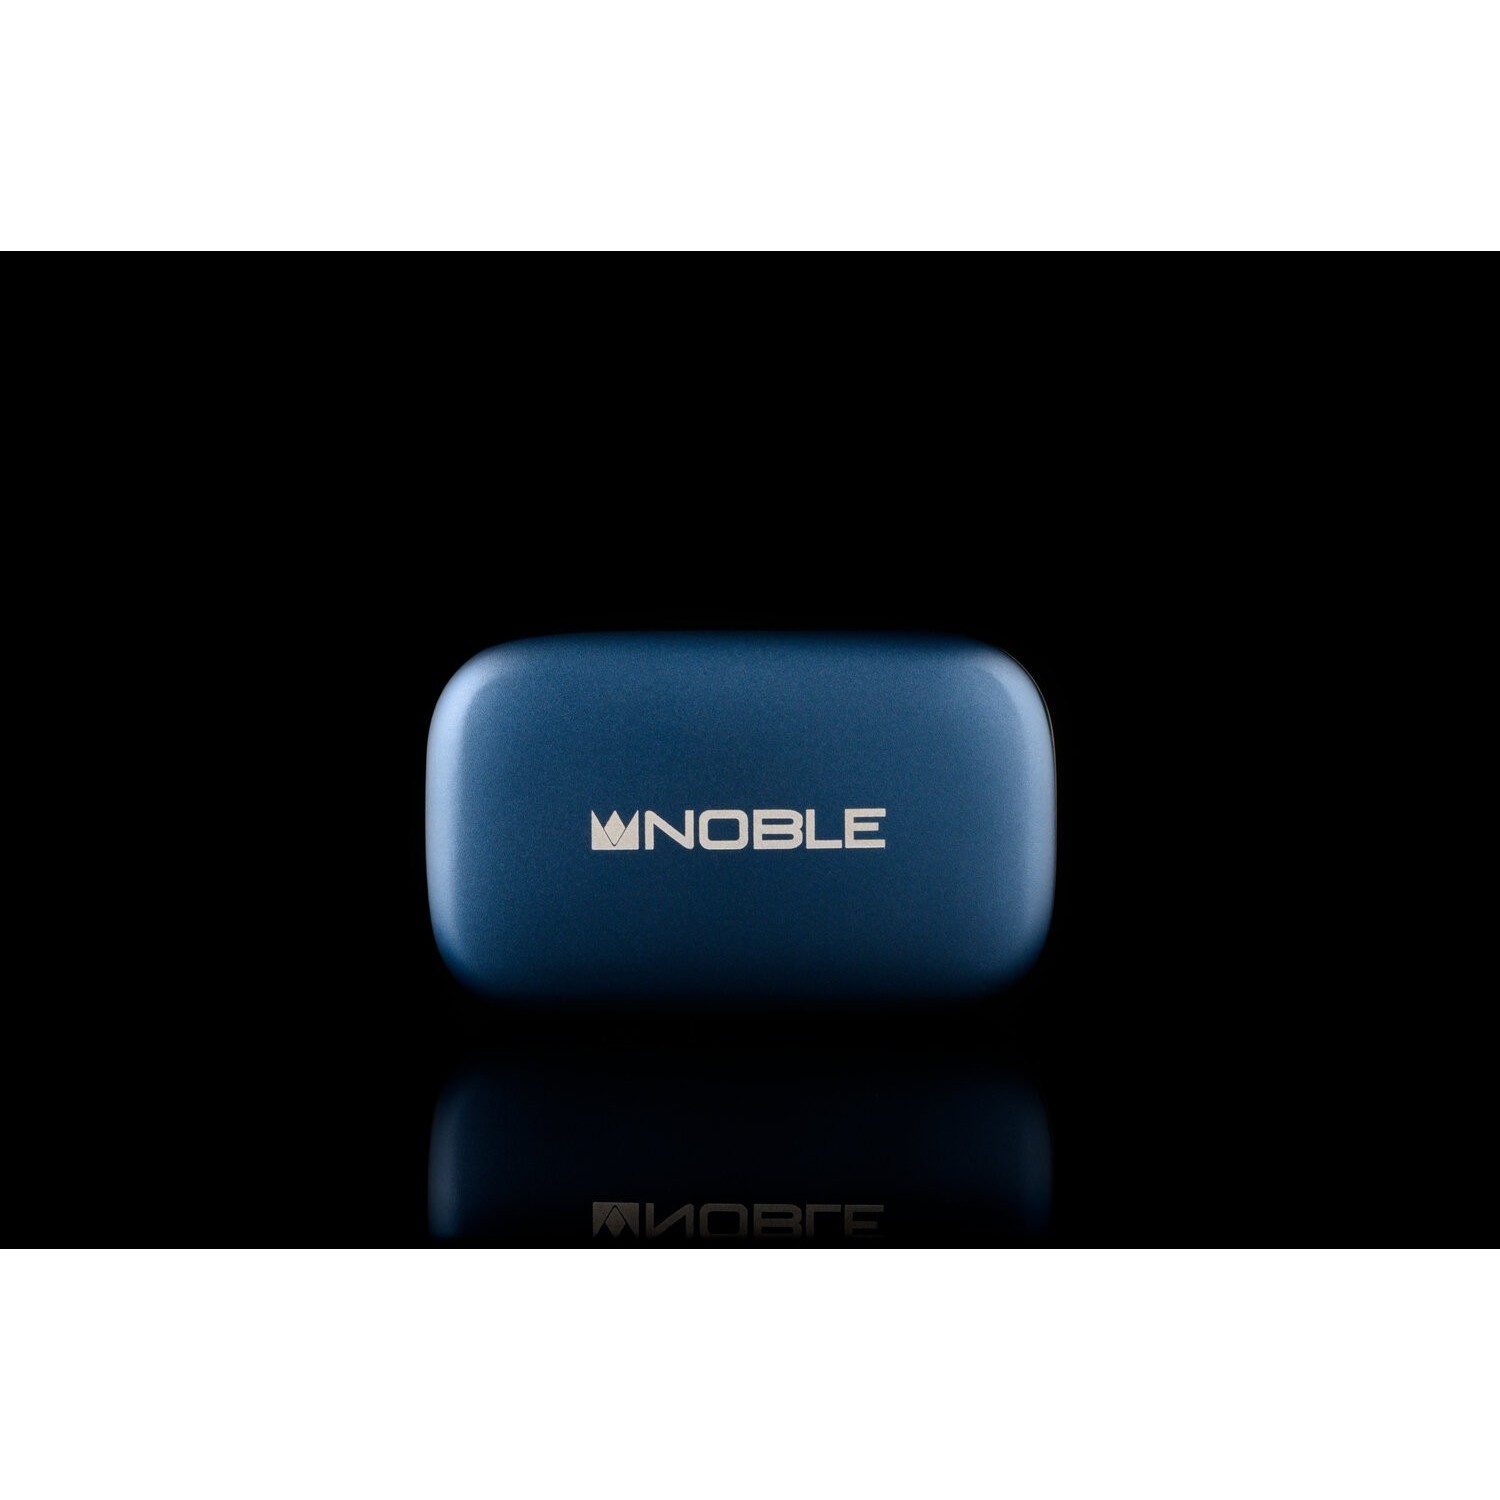 Noble audio mystique. Noble Audio Focus Pro. Noble Fokus Pro Box. Noble Audio Focus Pro купить. Noble Audio Focus Mystique.